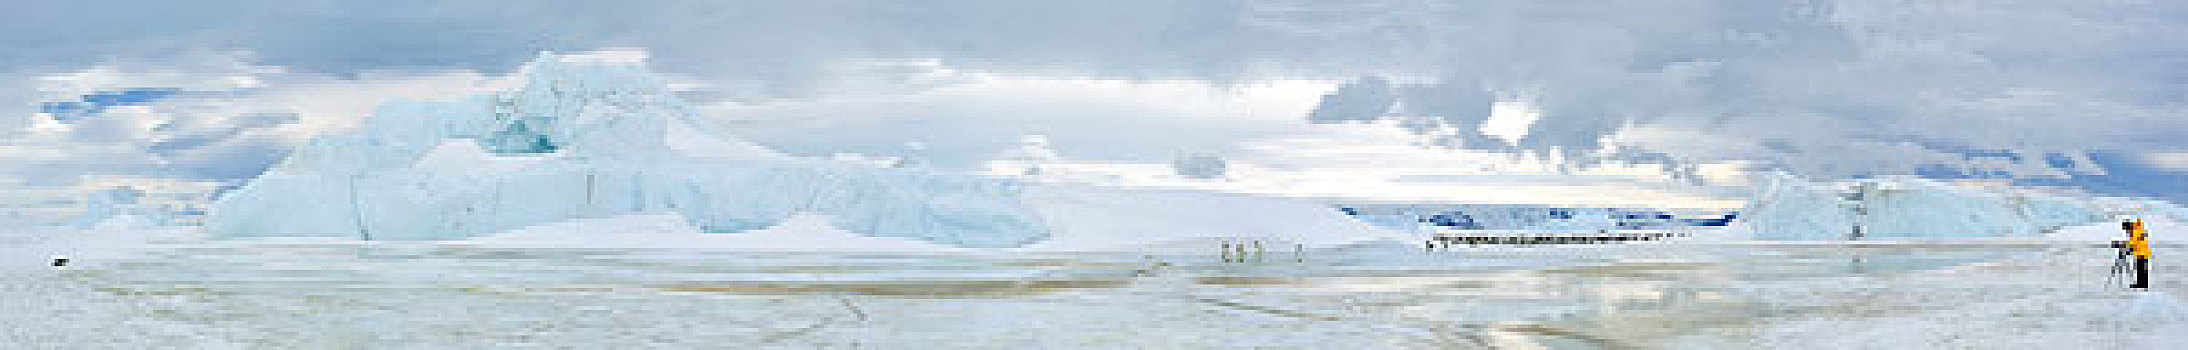 南极,威德尔海,雪丘岛,全景,照片,游客,摄影,帝企鹅